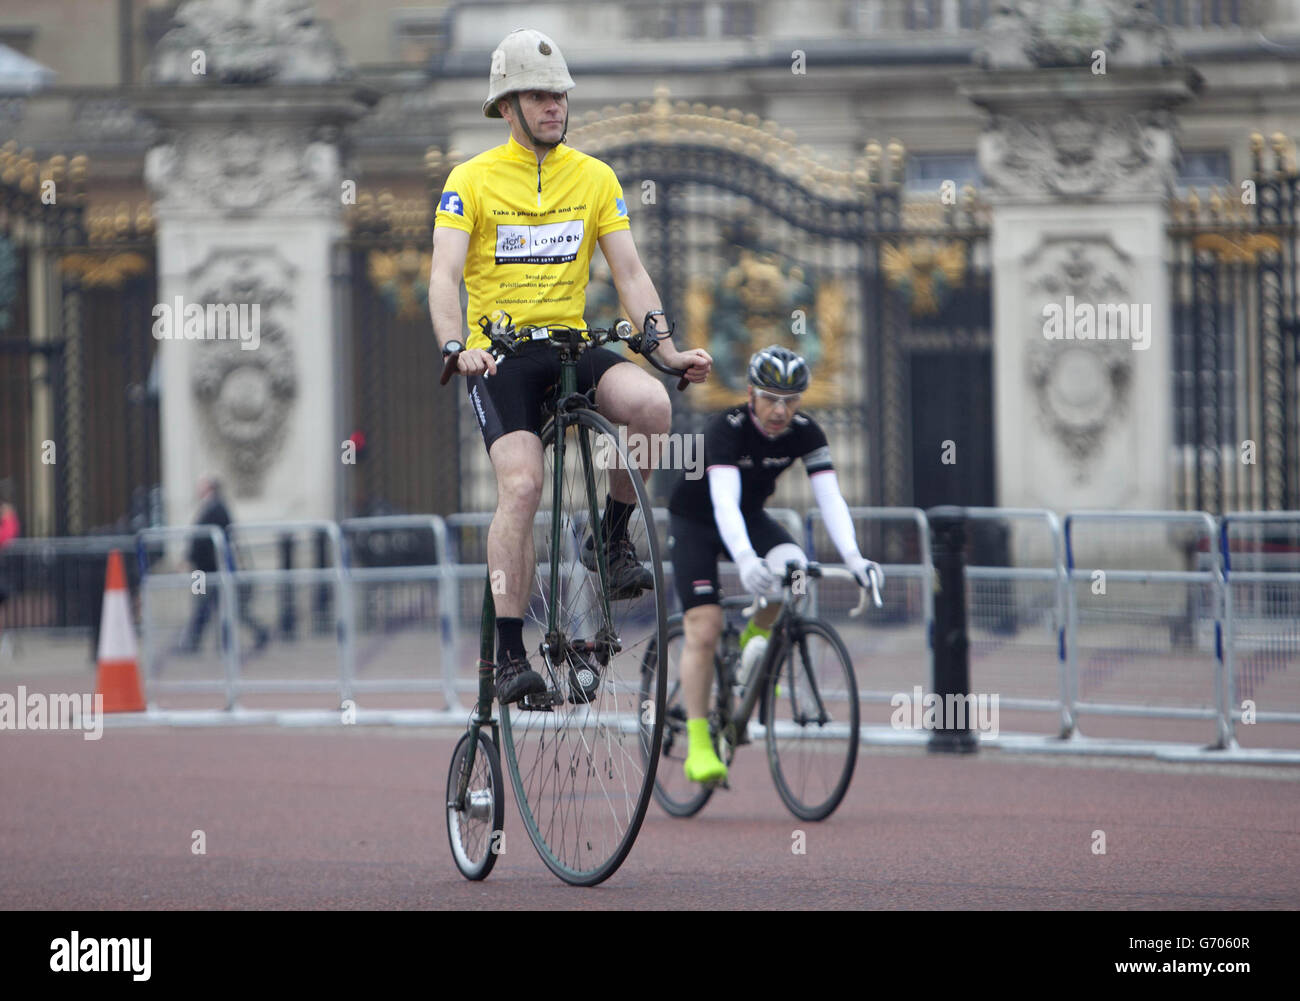 Joff Summerfield, da Greenwich, nel sud-est di Londra, passa il suo penny farthing davanti a Buckingham Palace, nel centro di Londra, durante il suo allenamento, prima di partecipare ai classici di primavera di quest'anno per celebrare il Tour de France che arriva a Londra il 7 luglio. Foto Stock